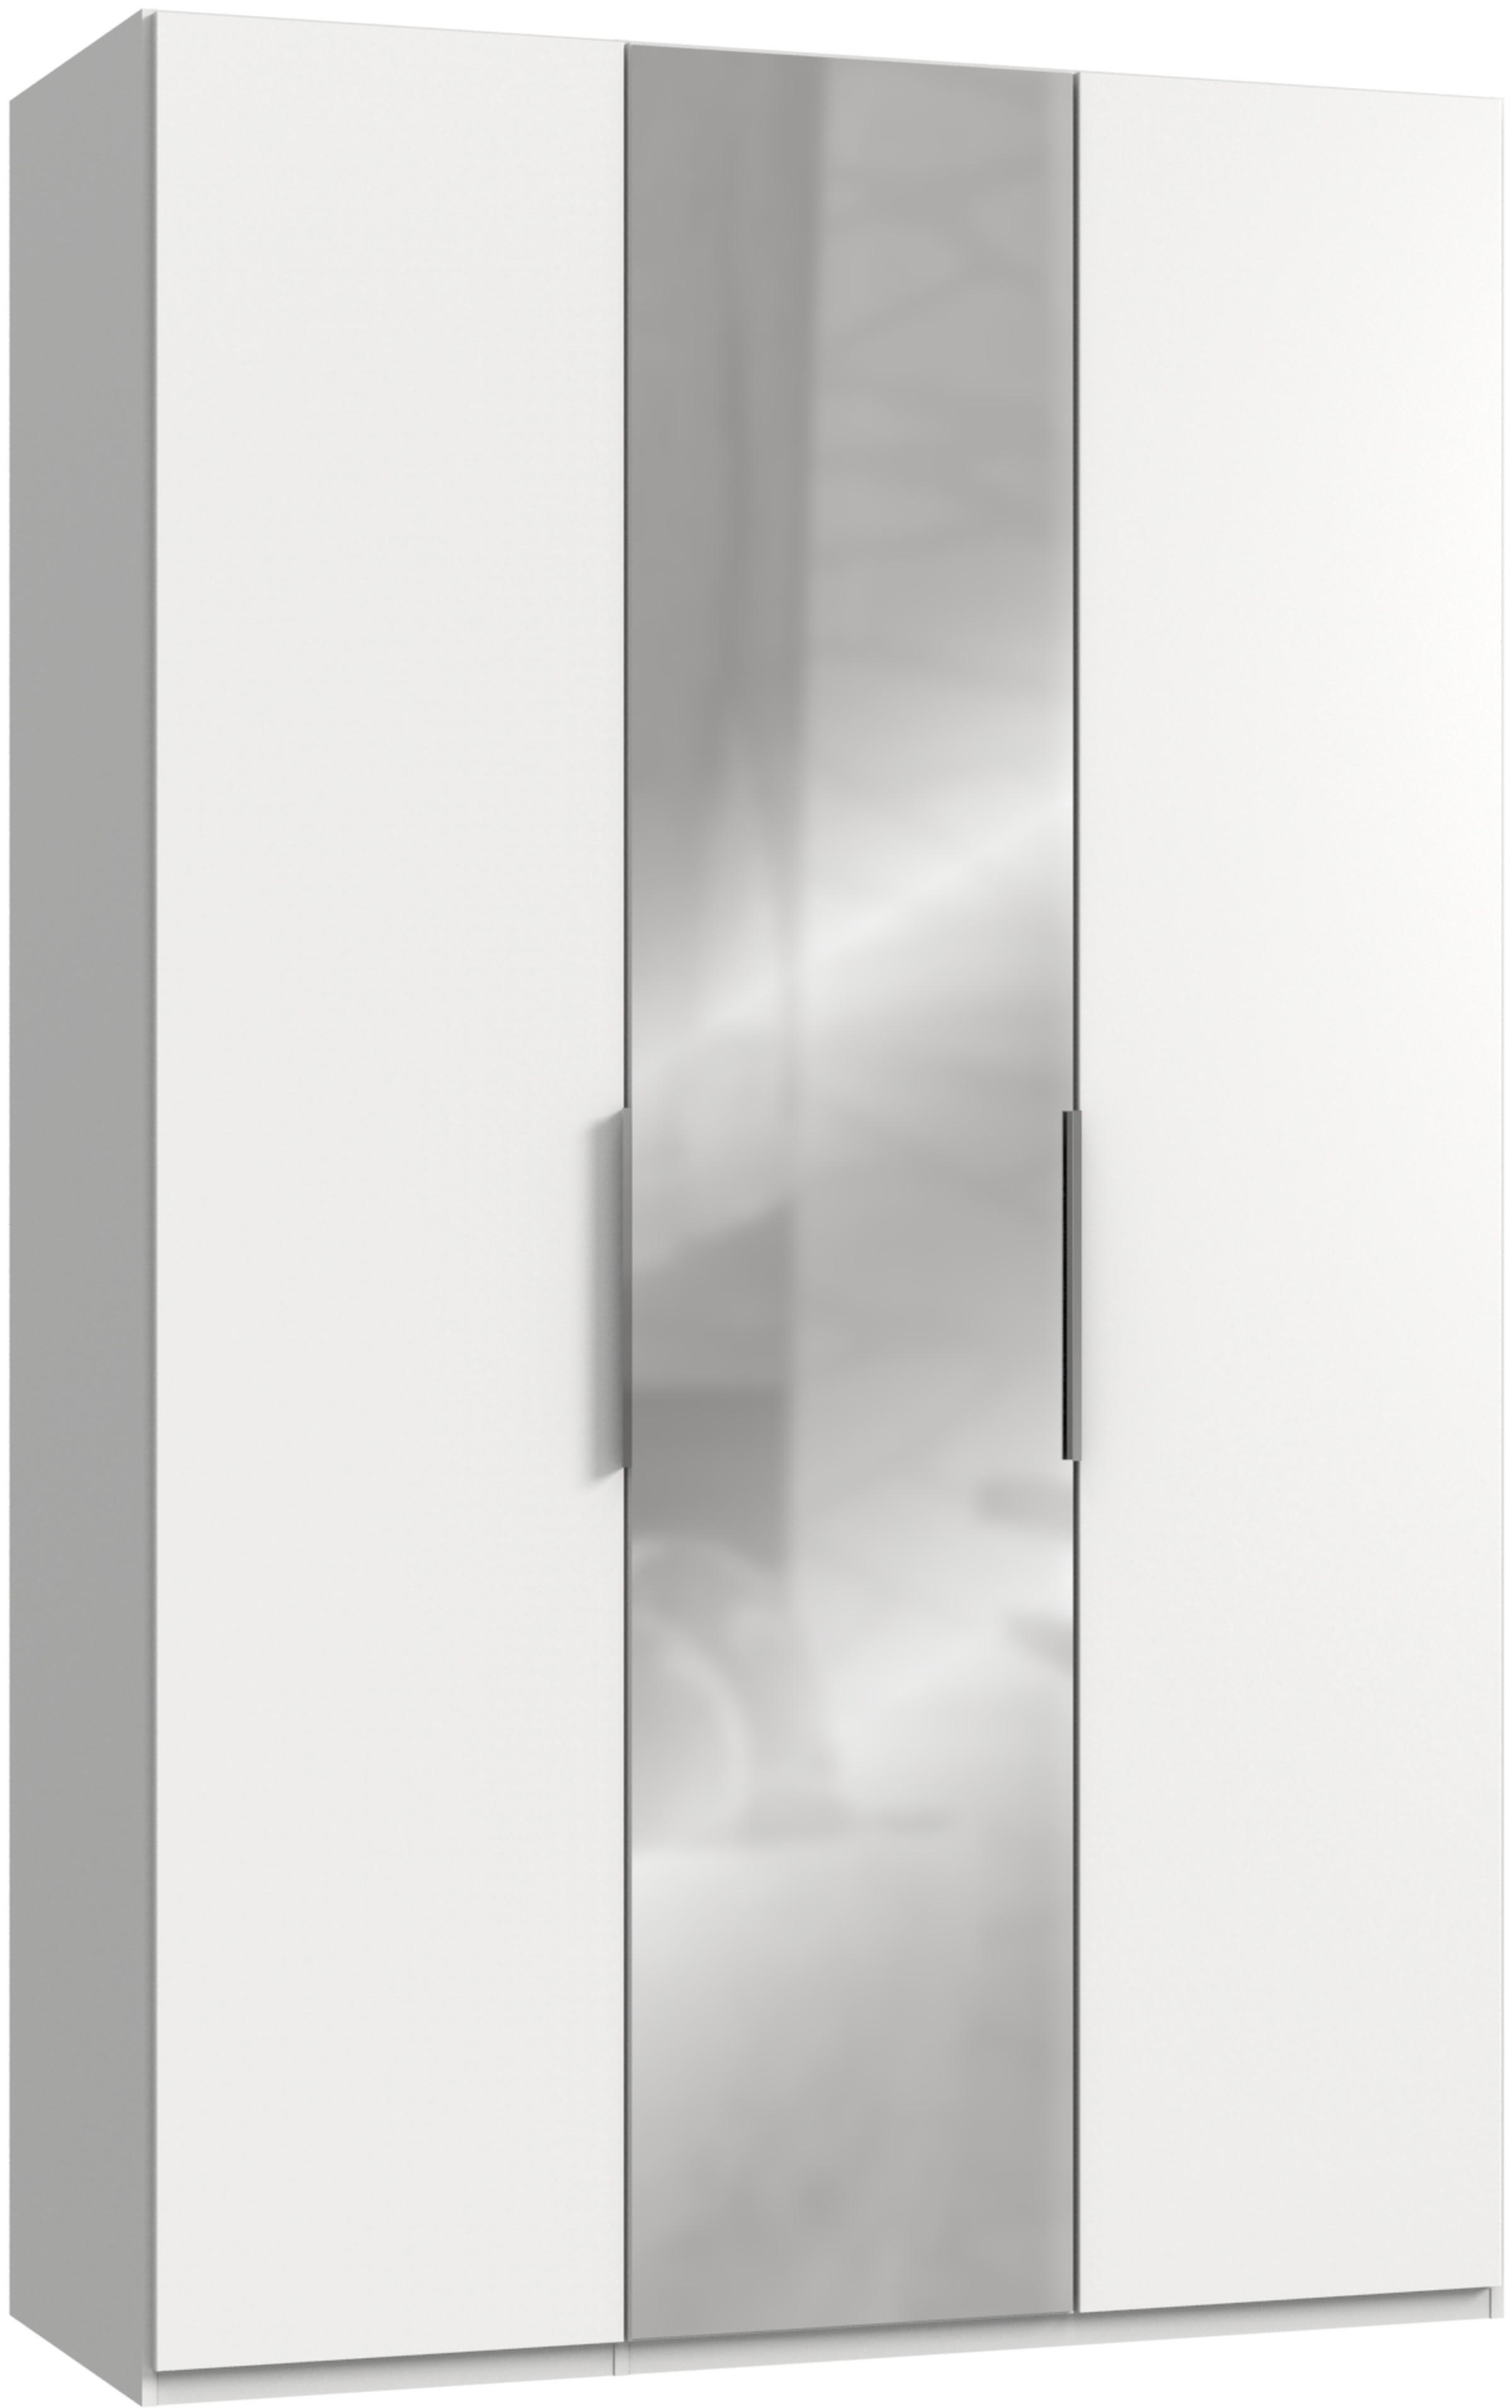 DREHTÜRENSCHRANK 3-türig Weiß  - Chromfarben/Weiß, MODERN, Holzwerkstoff/Metall (150/236/58cm) - MID.YOU